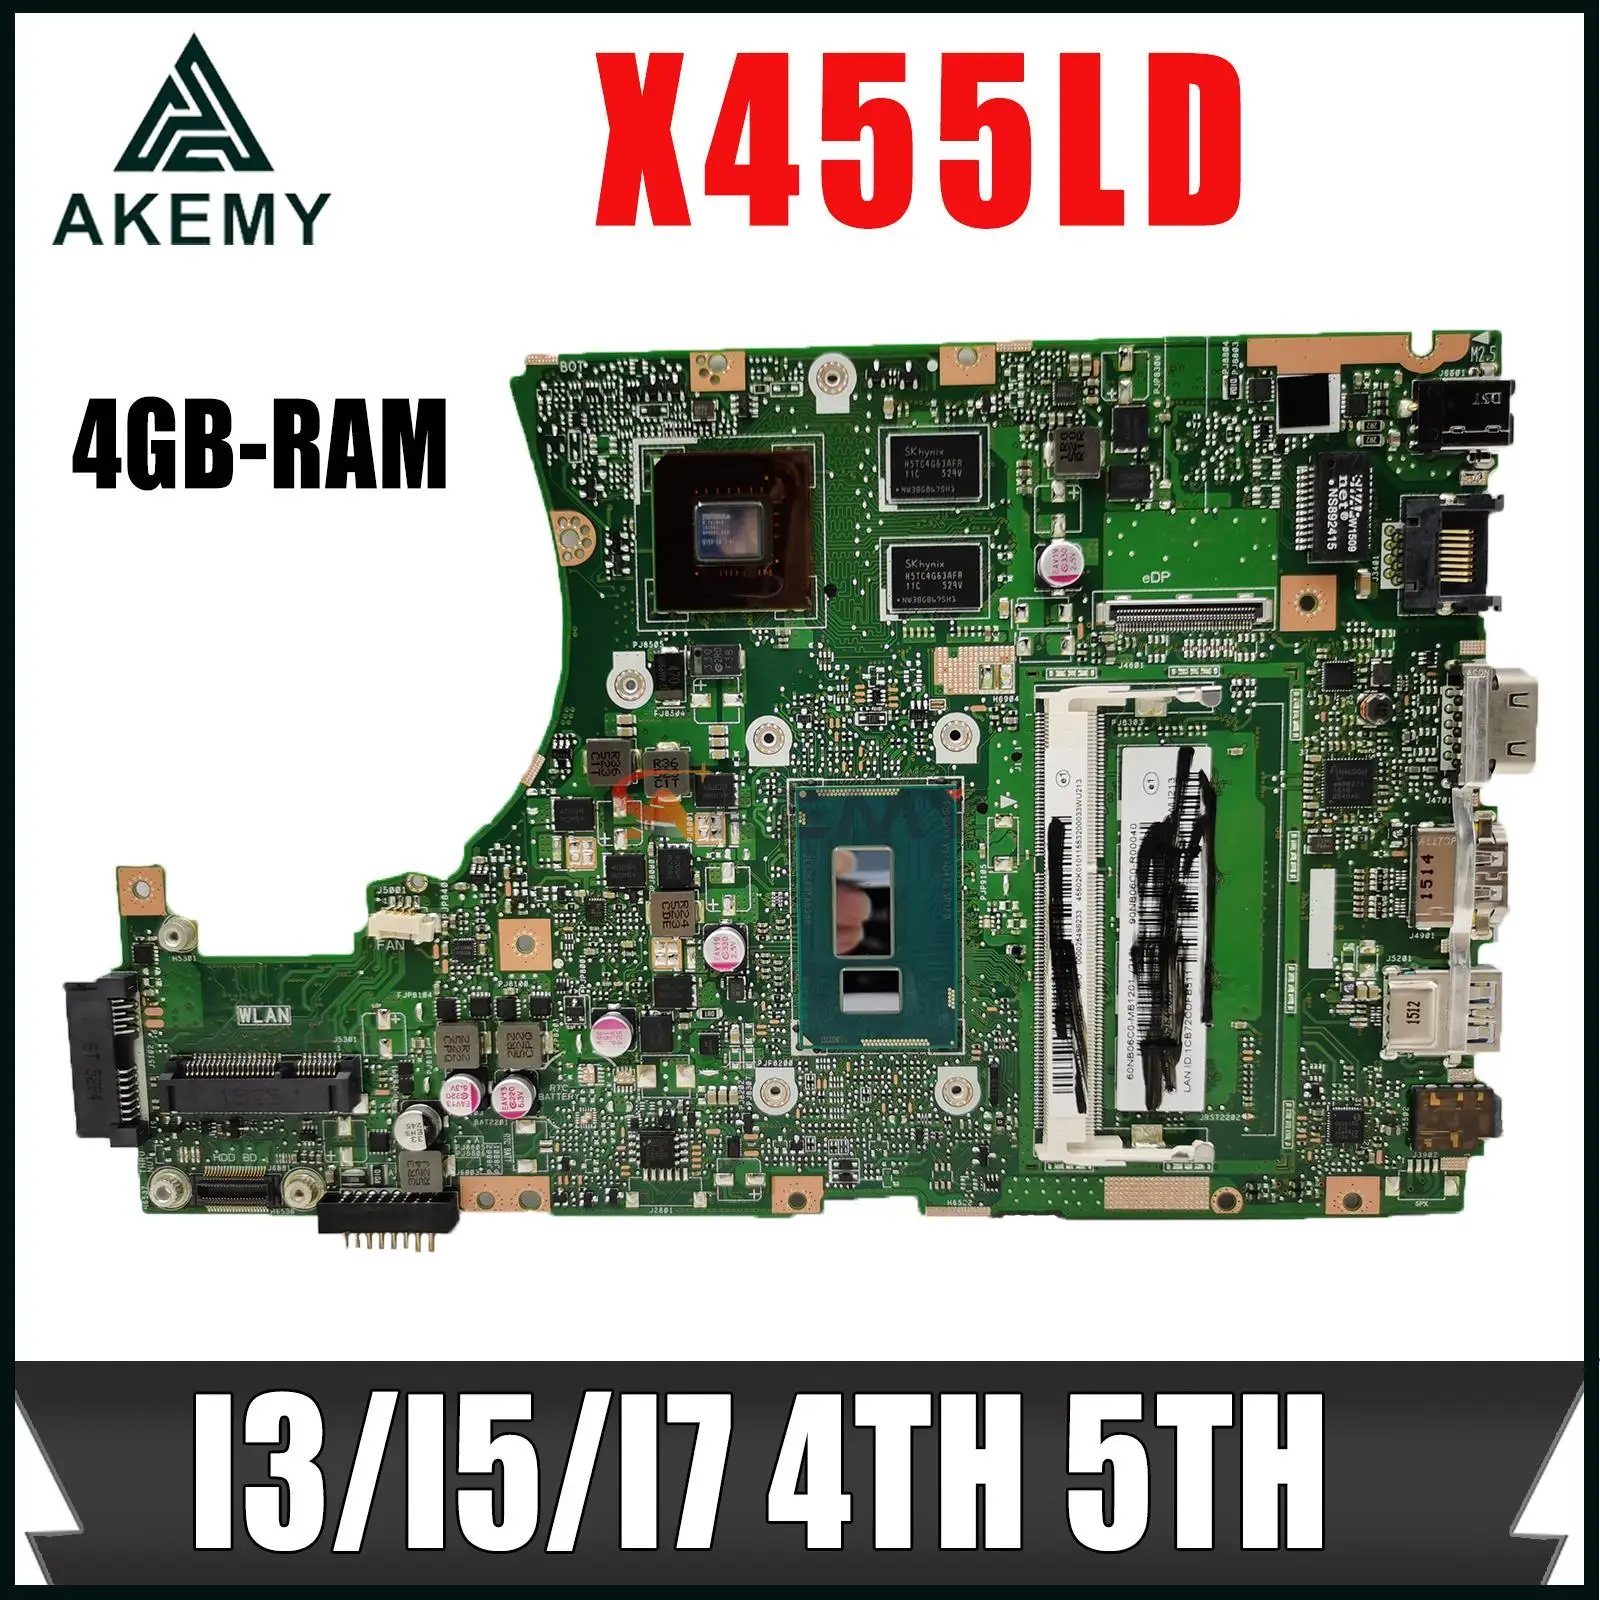 

X455LJ Mainboard ASUS For X455LD X455LA R454L X455LF X455LB K455L A455L REV 3.1 2.1 Laptop Motherboard I3/I5/I7 4TH 5TH RAM-4GB